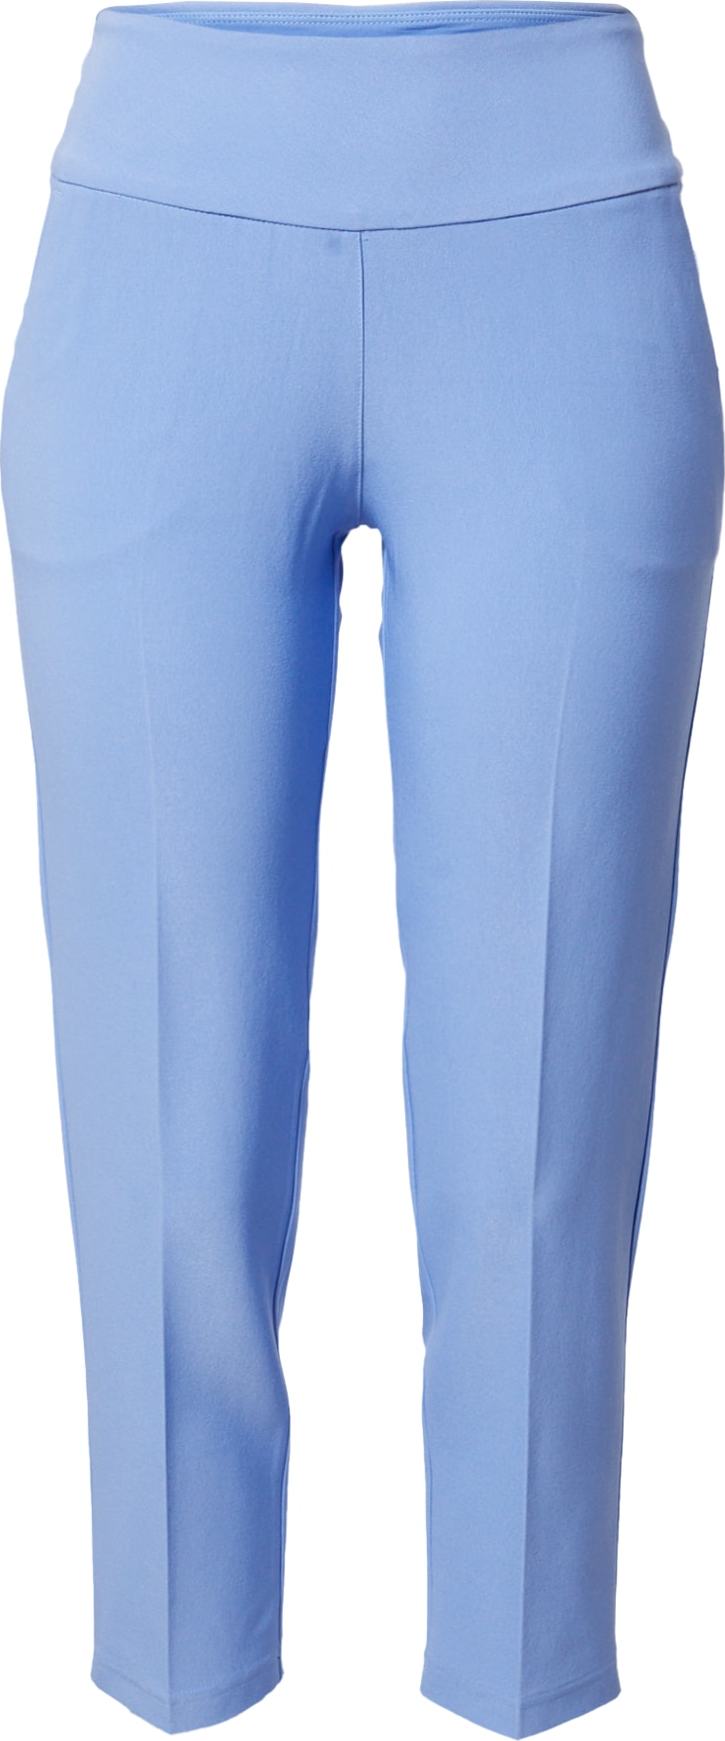 ADIDAS GOLF Sportovní kalhoty modrá